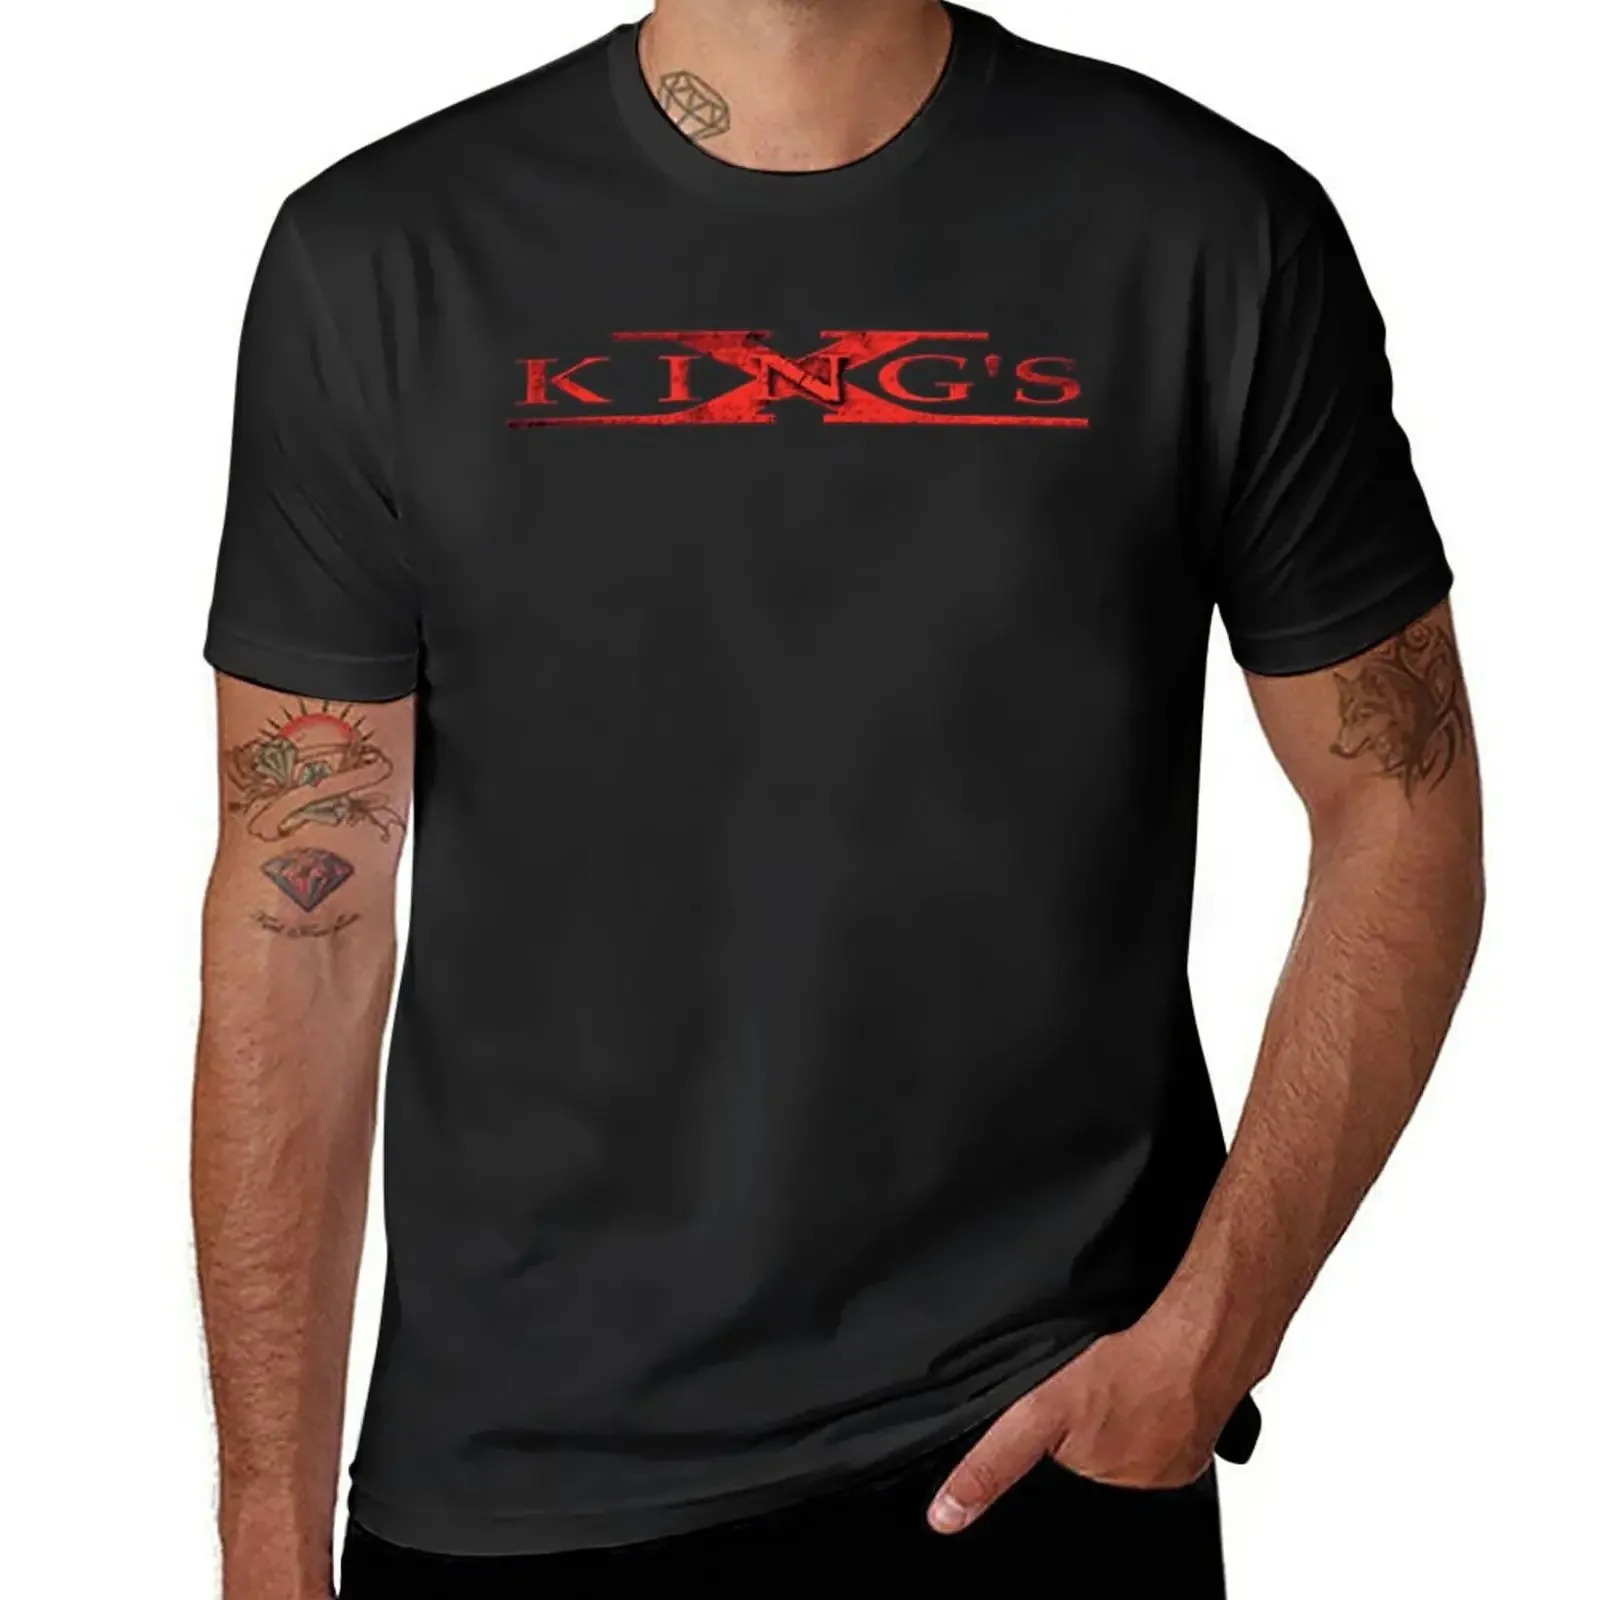 

Мужская хлопковая футболка с логотипом группы King's X